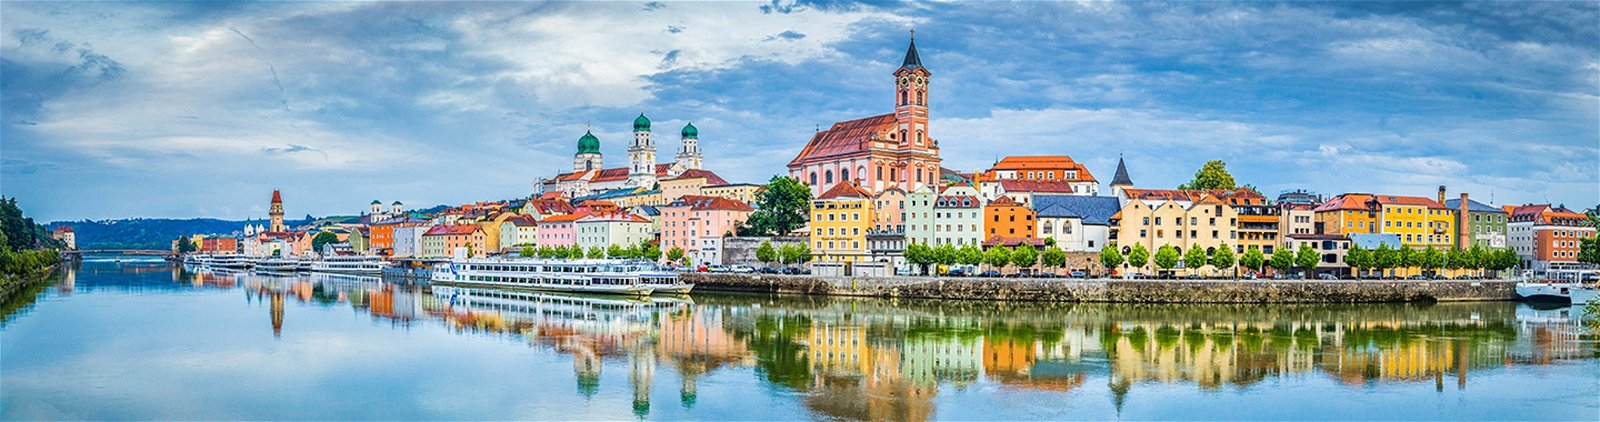 Kurzurlaub in Passau